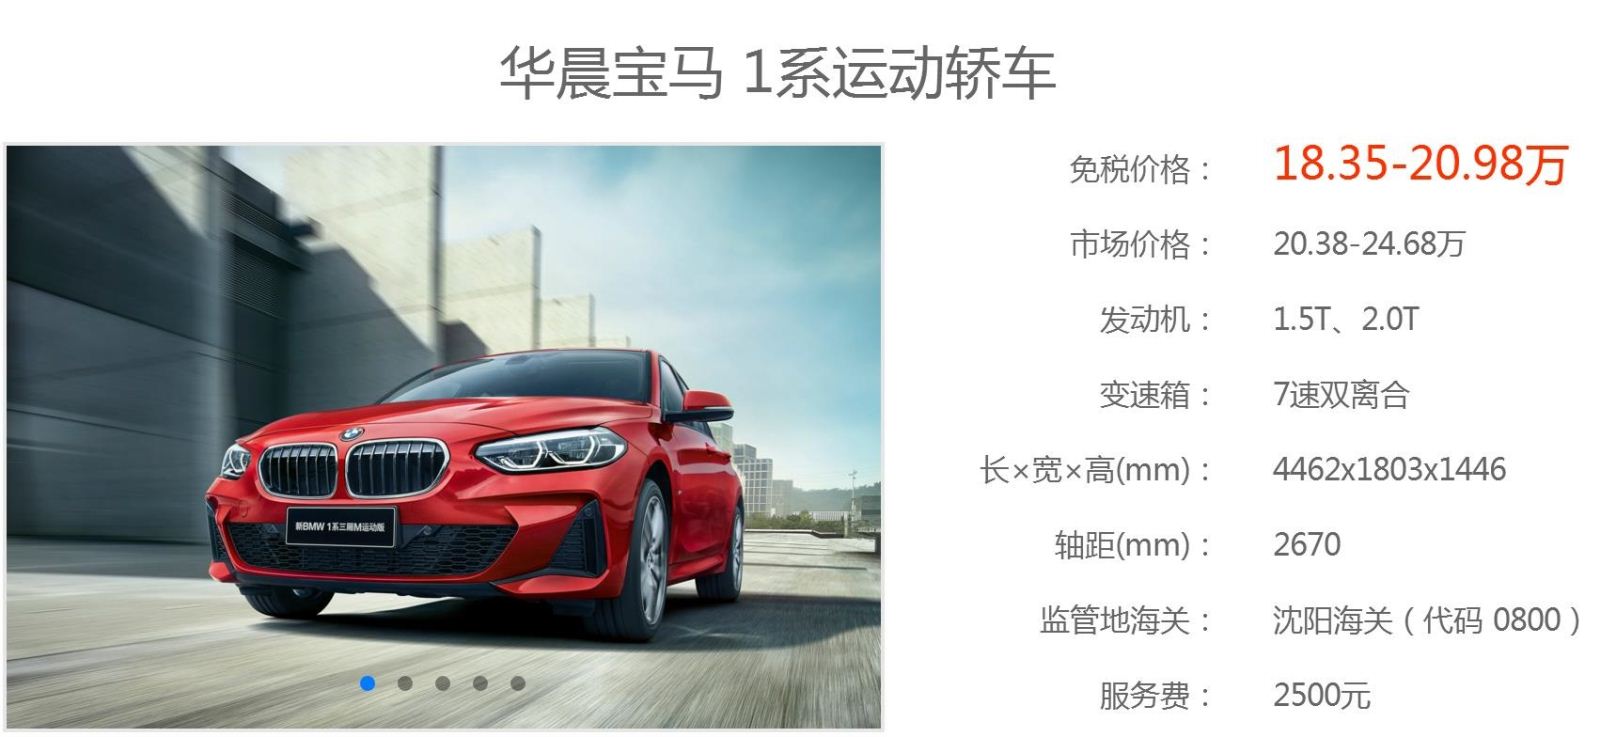 留学生免税车 BMW1系运动轿车最新免税价格发布